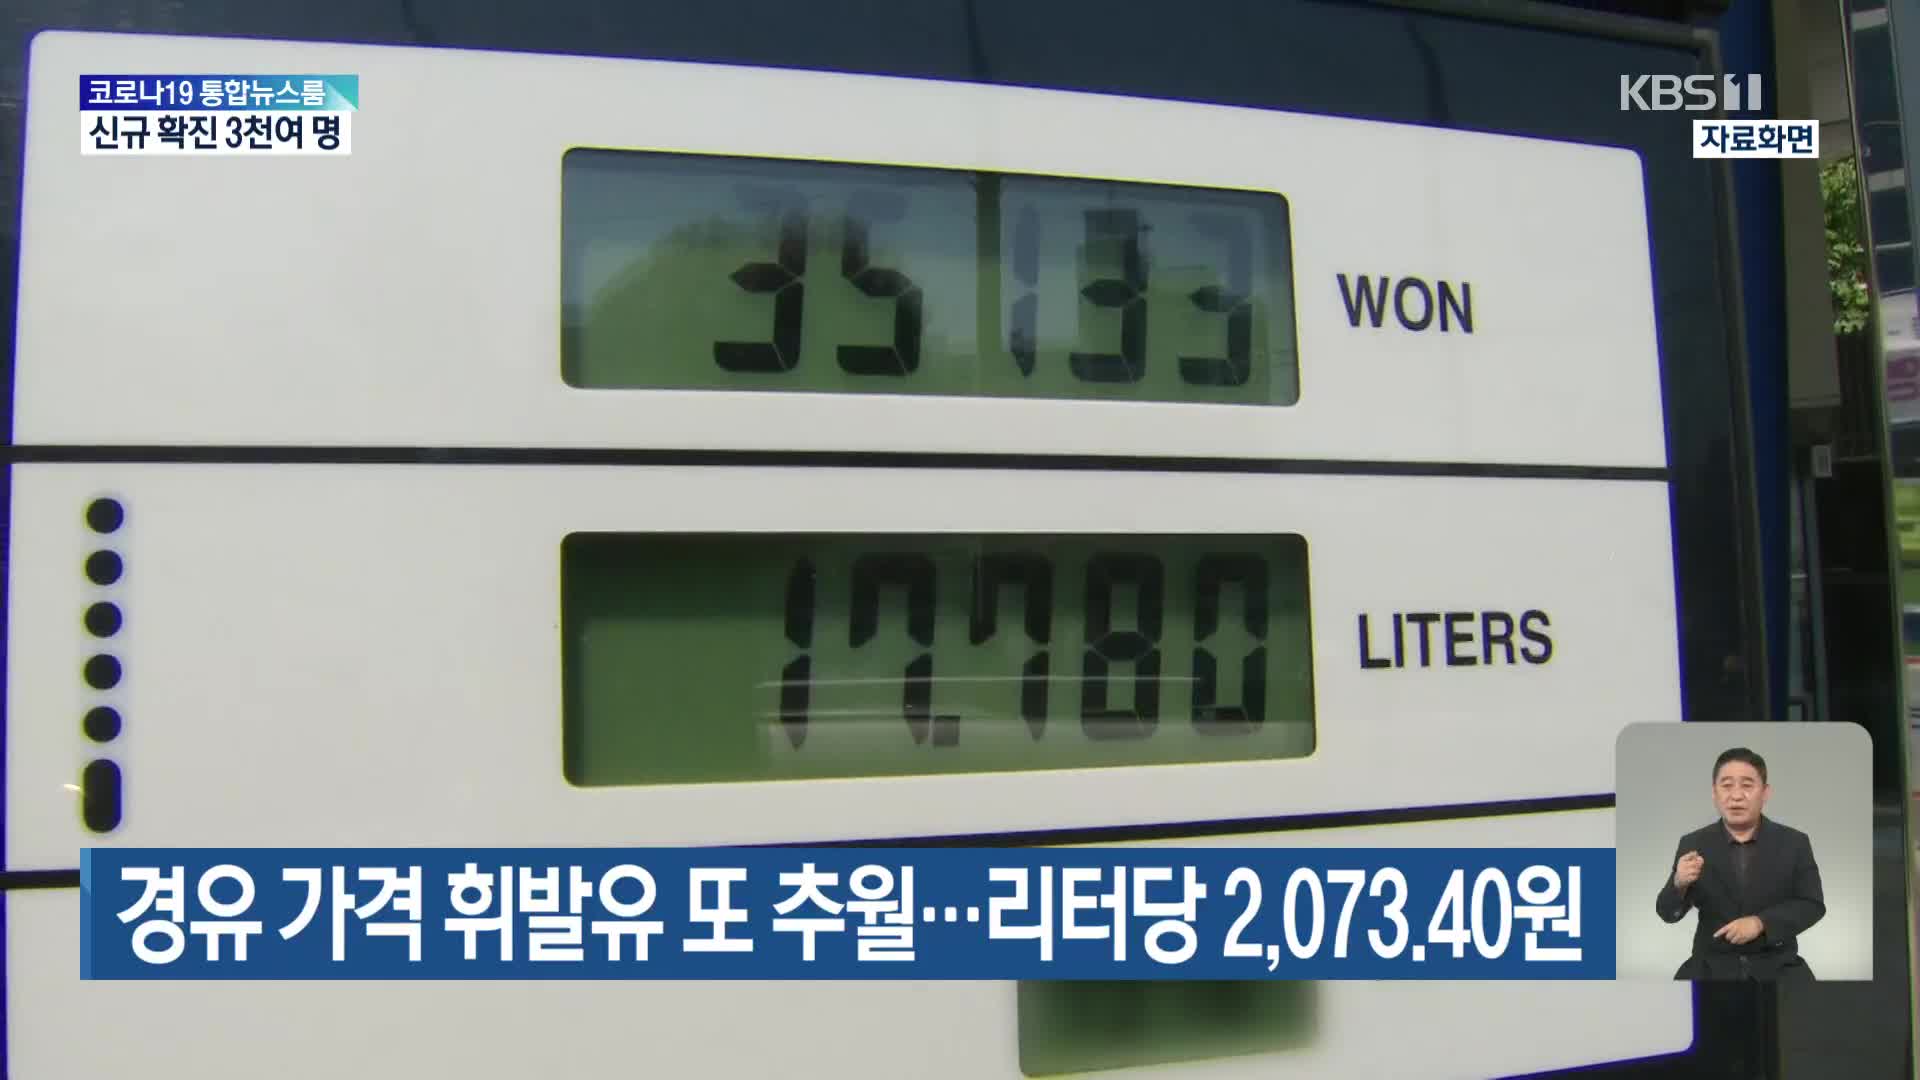 경유 가격 휘발유 또 추월…리터당 2,073.40원